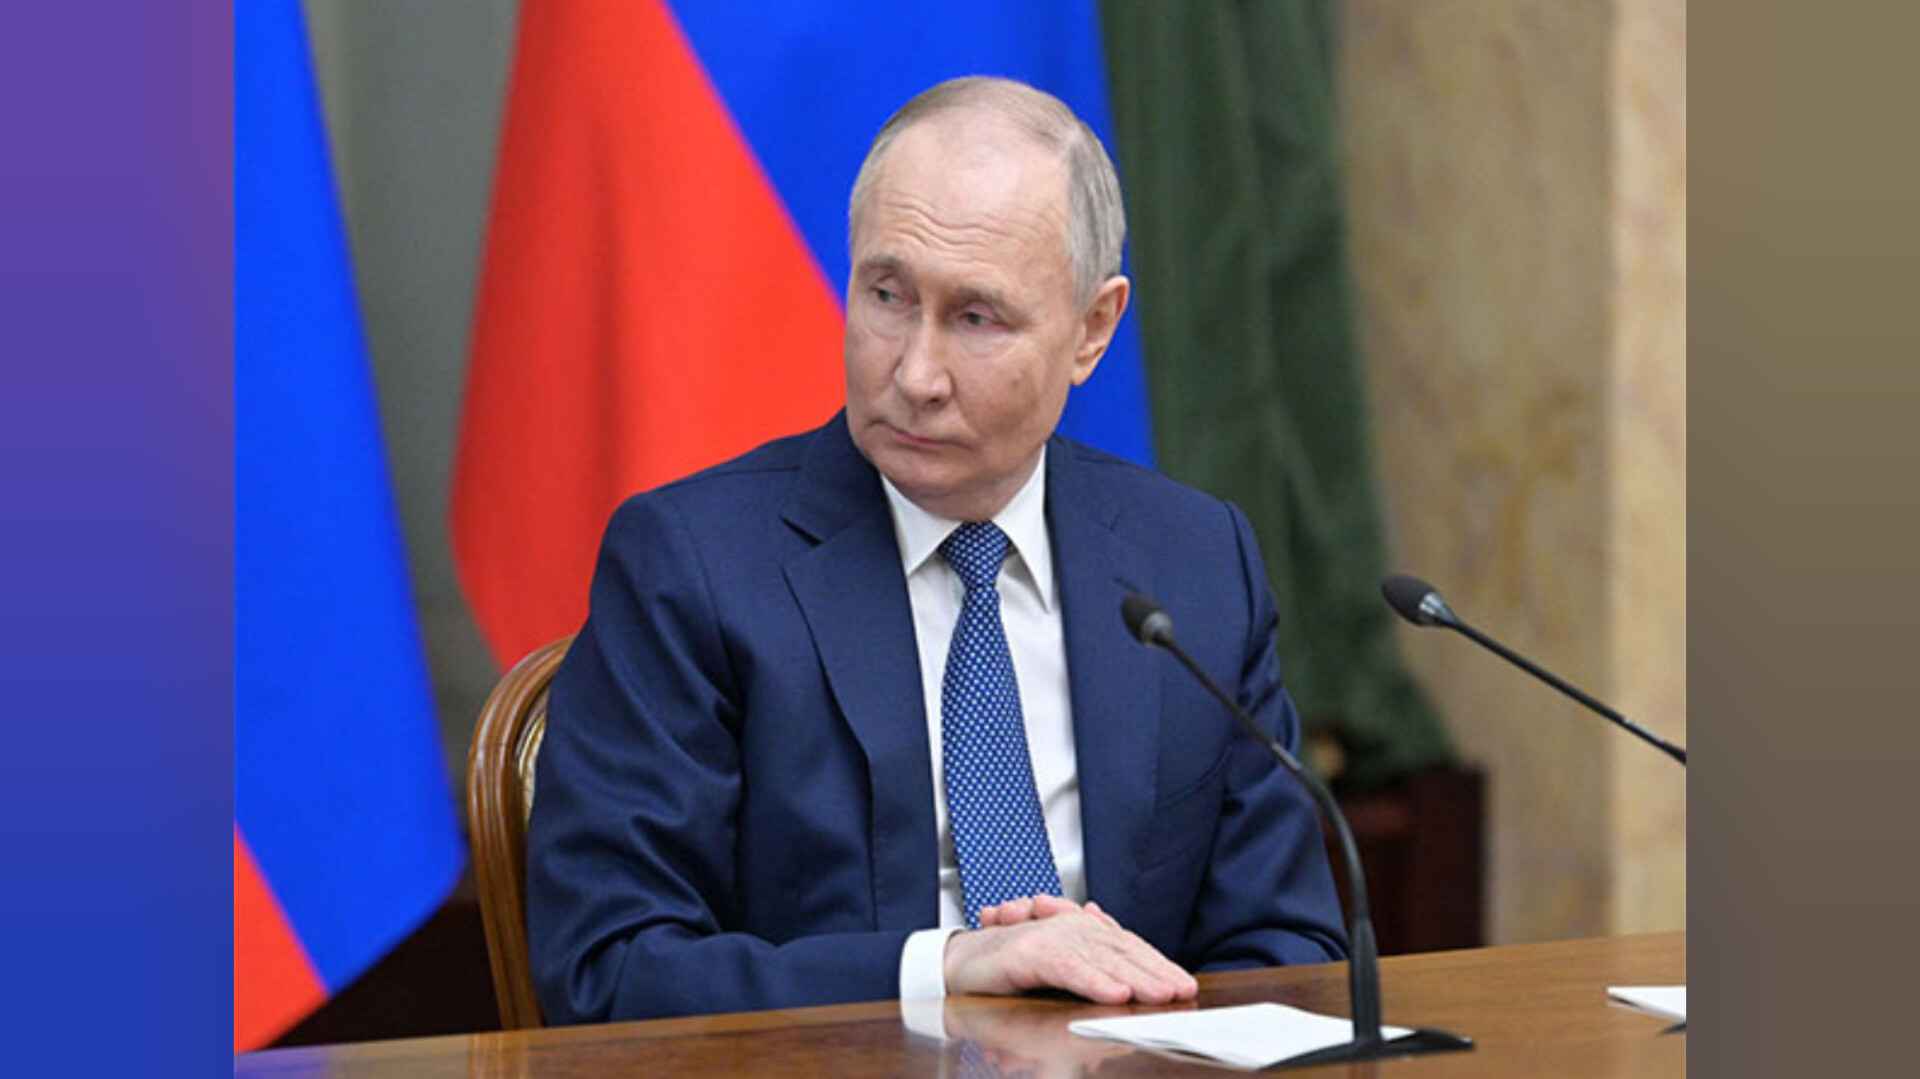 यूक्रेन से युद्ध के बीच राष्ट्रपति पुतिन ने सेना को दिया परमाणु हथियारों के अभ्यास का आदेश